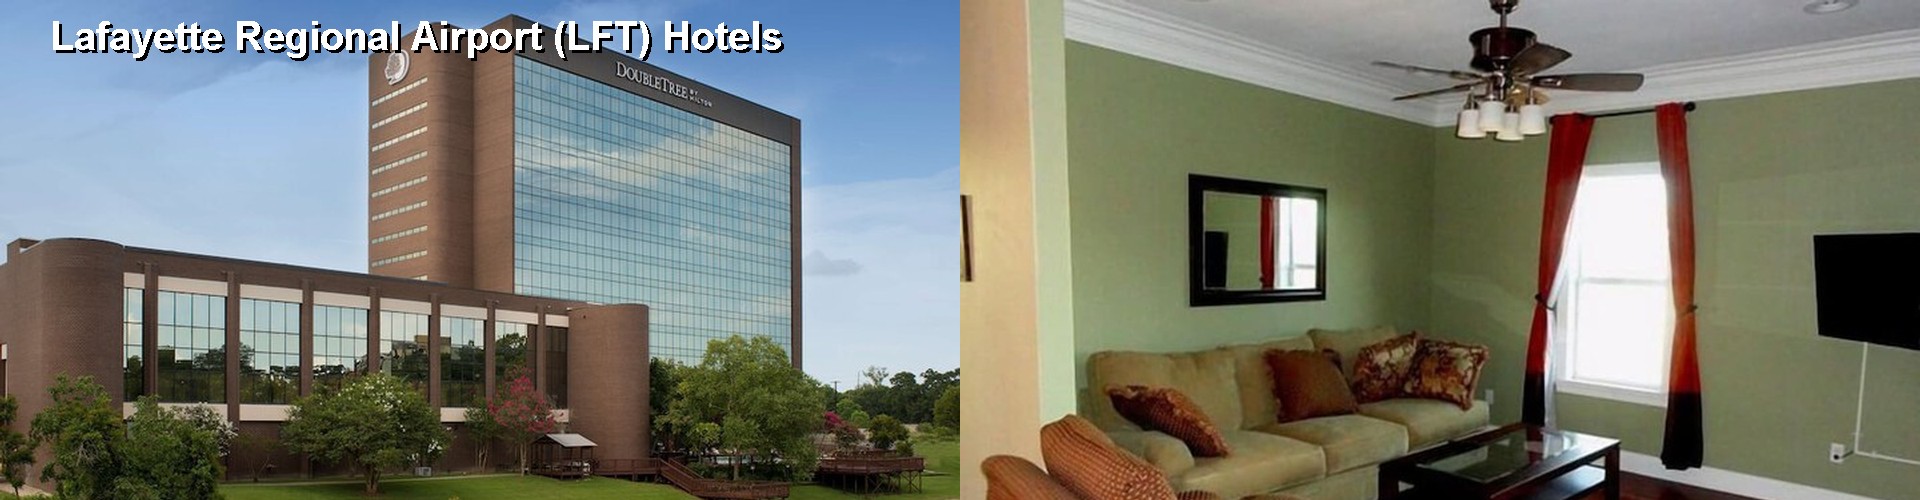 1 Best Hotels near Lafayette Regional Airport (LFT)